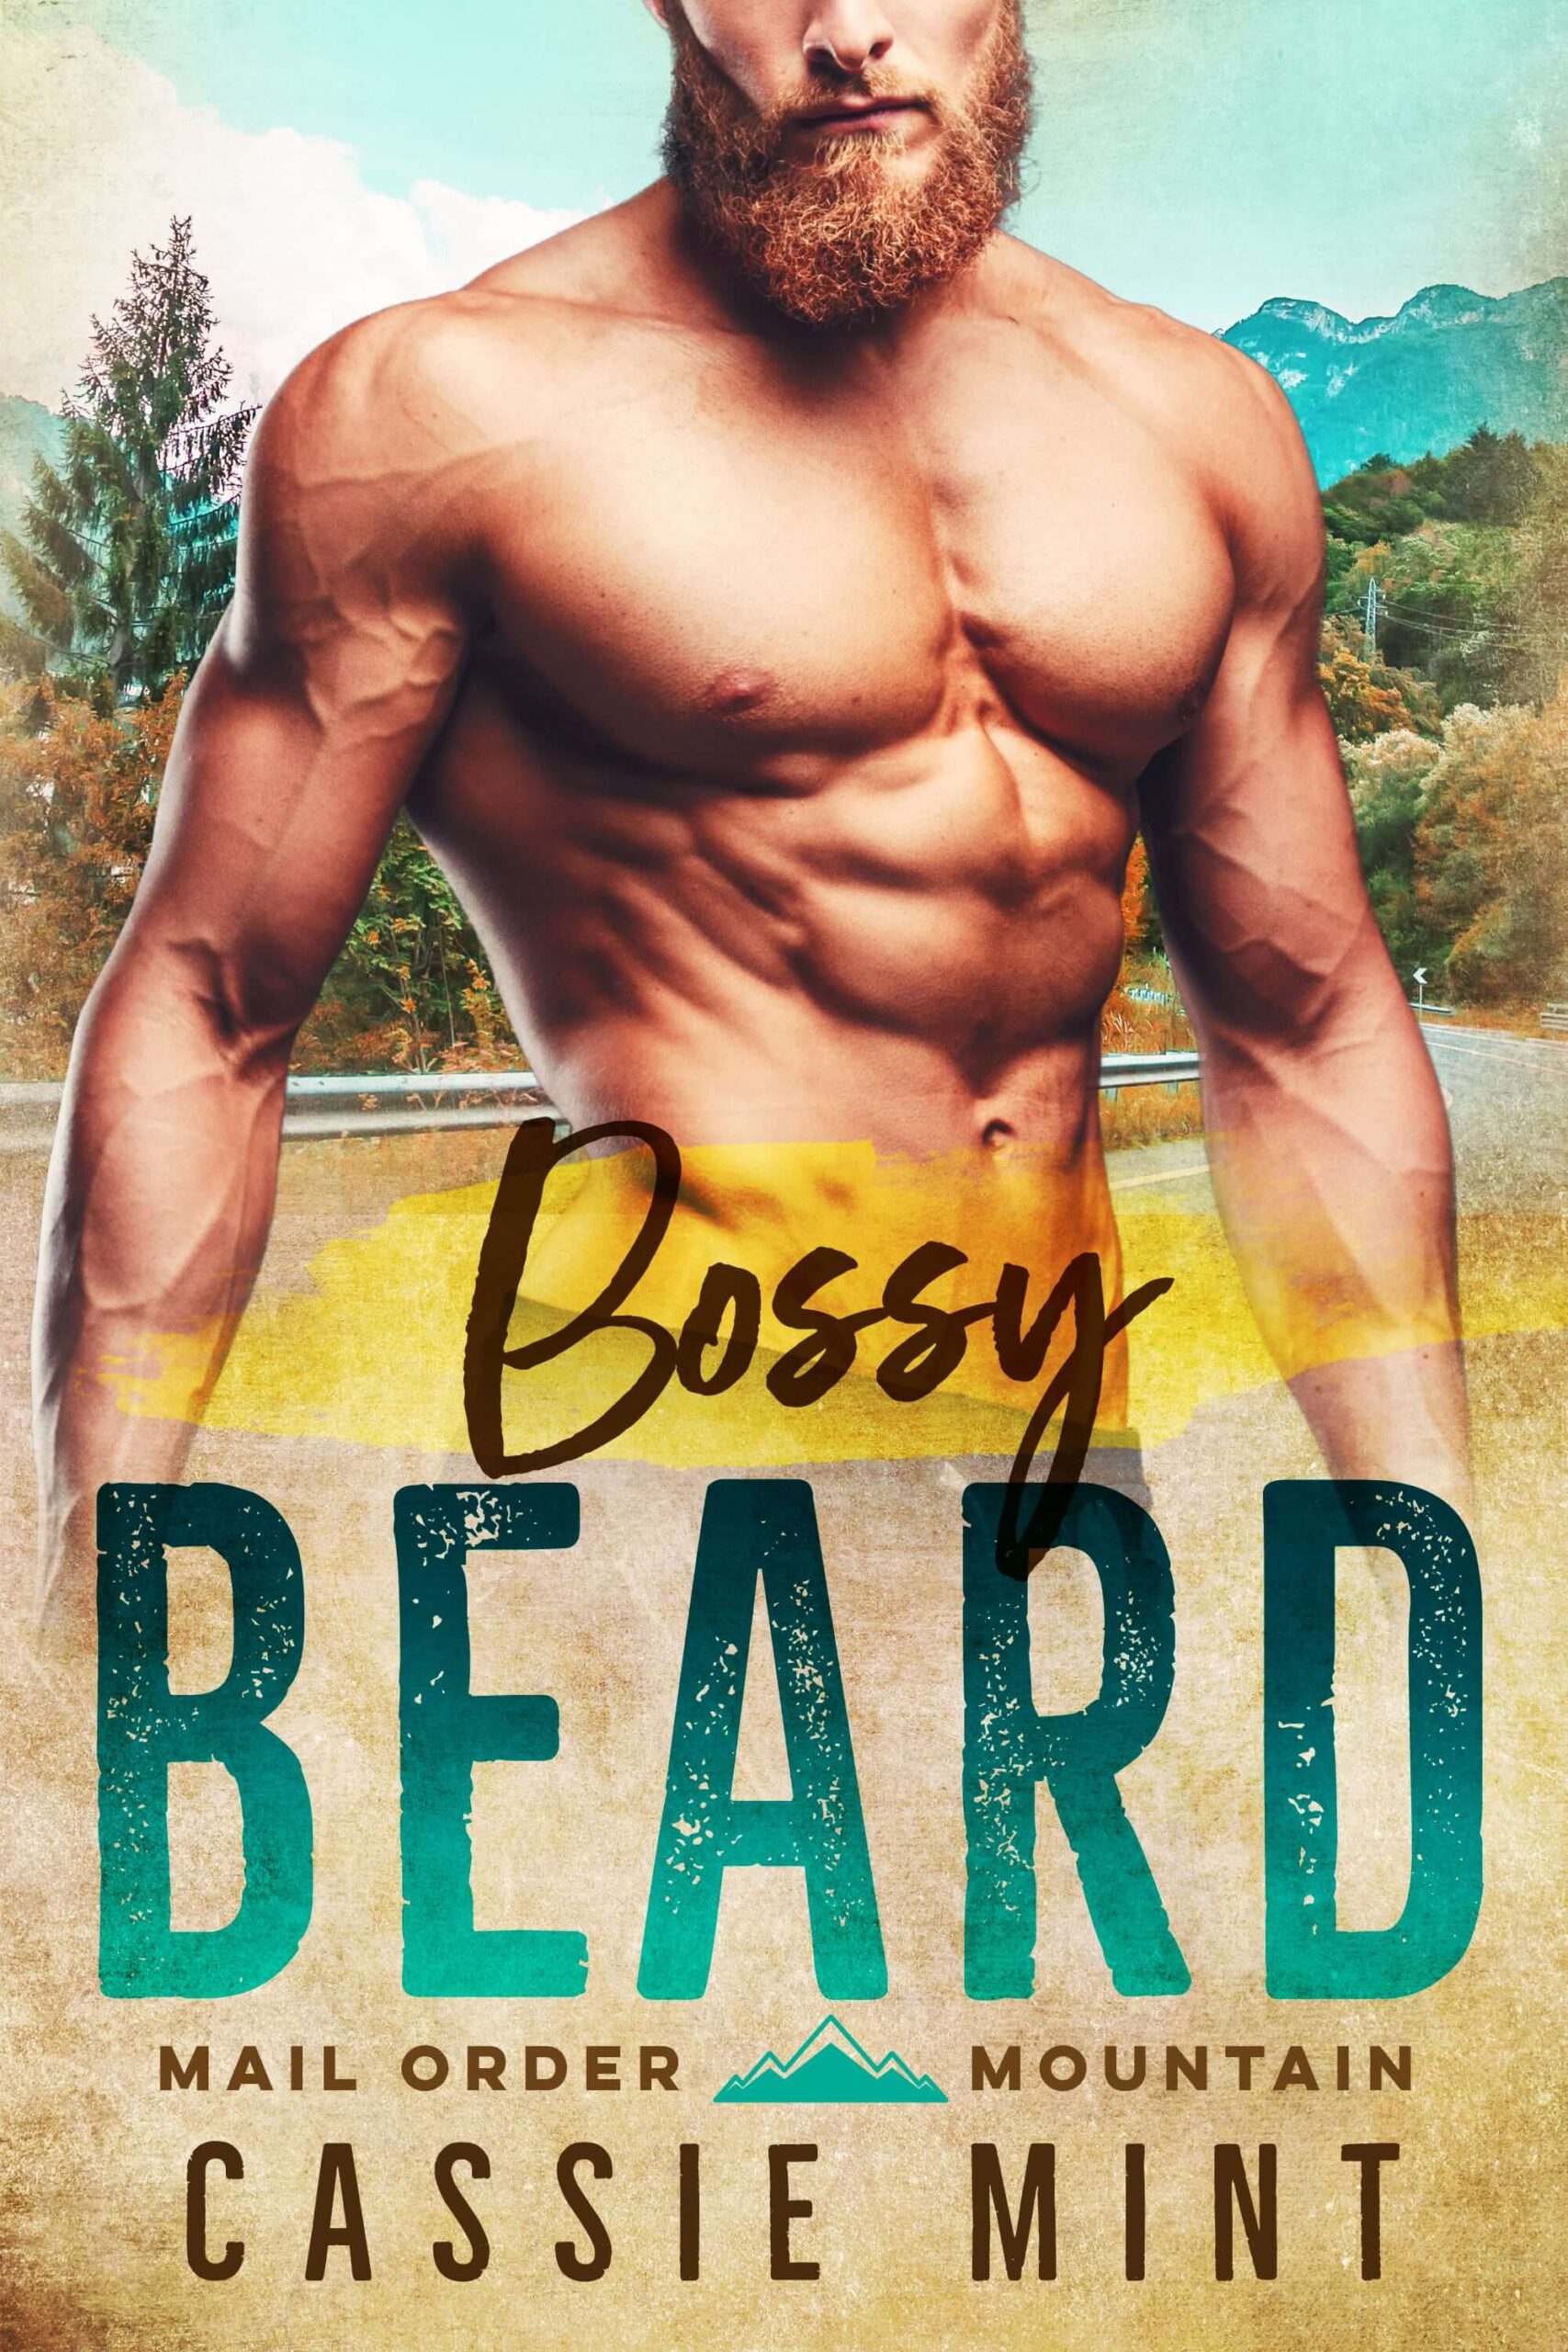 Bossy Beard